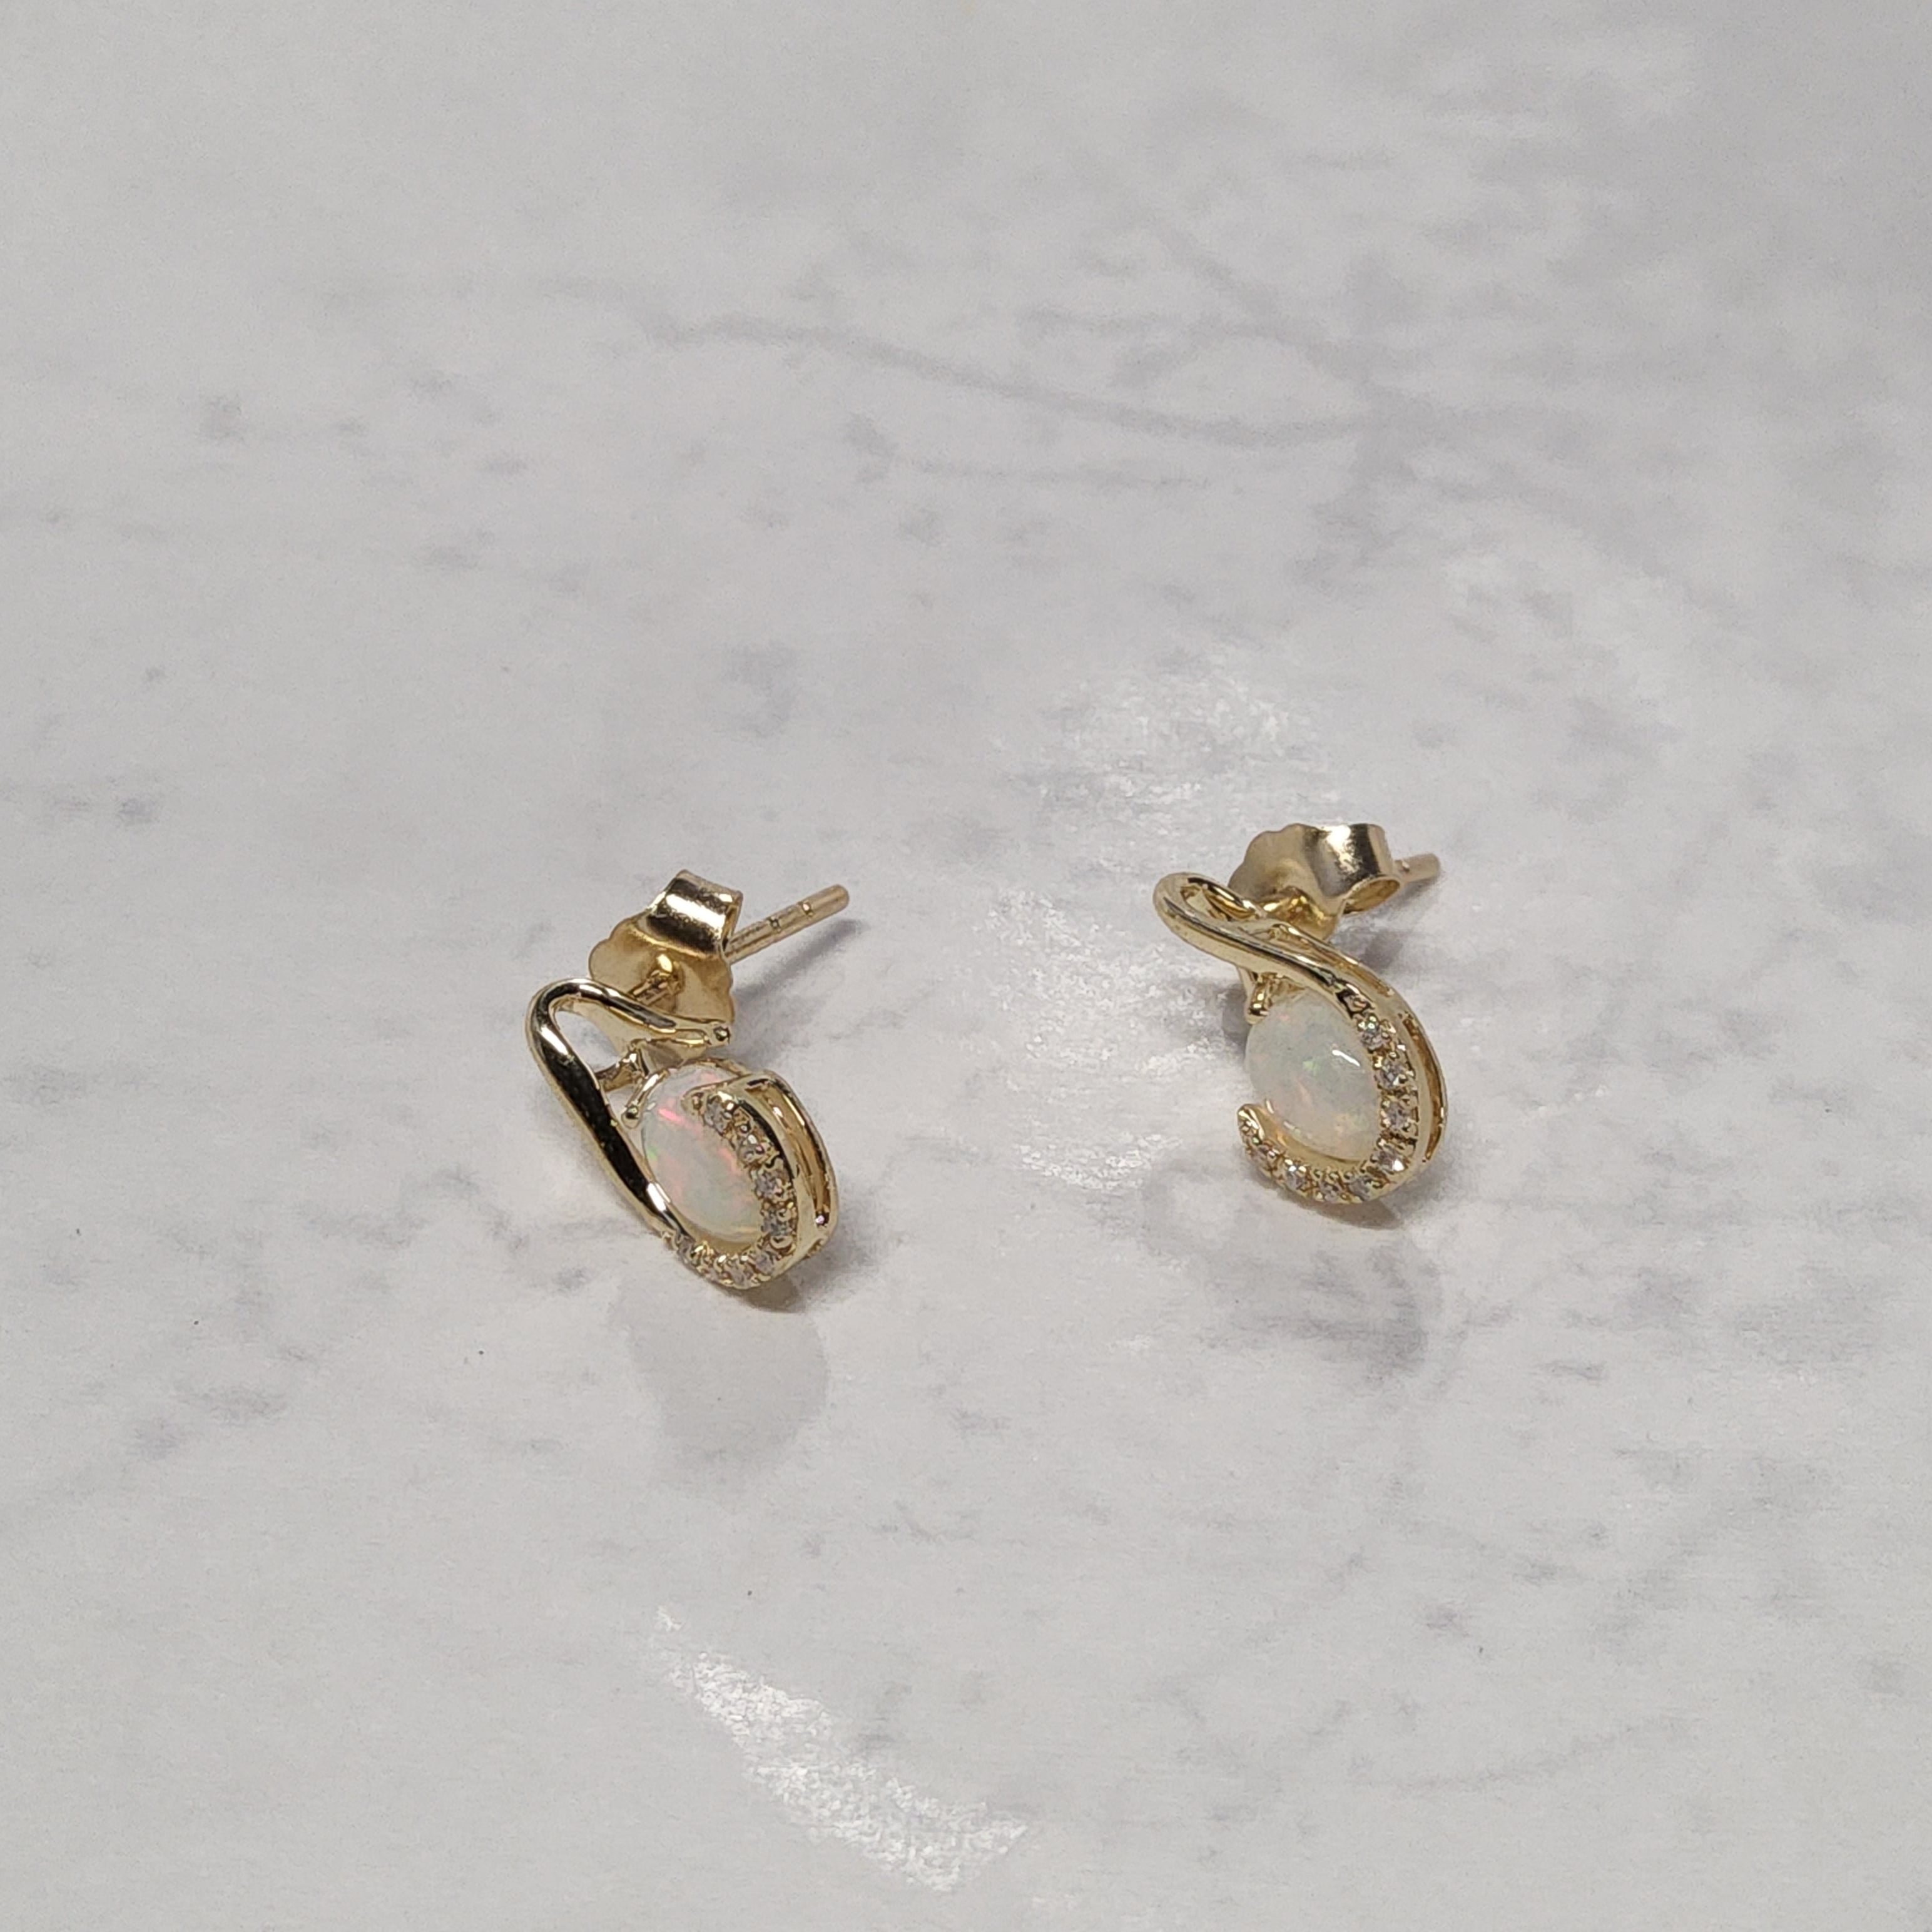 Oval Cut Opal Earrings with Diamonds - JE01968